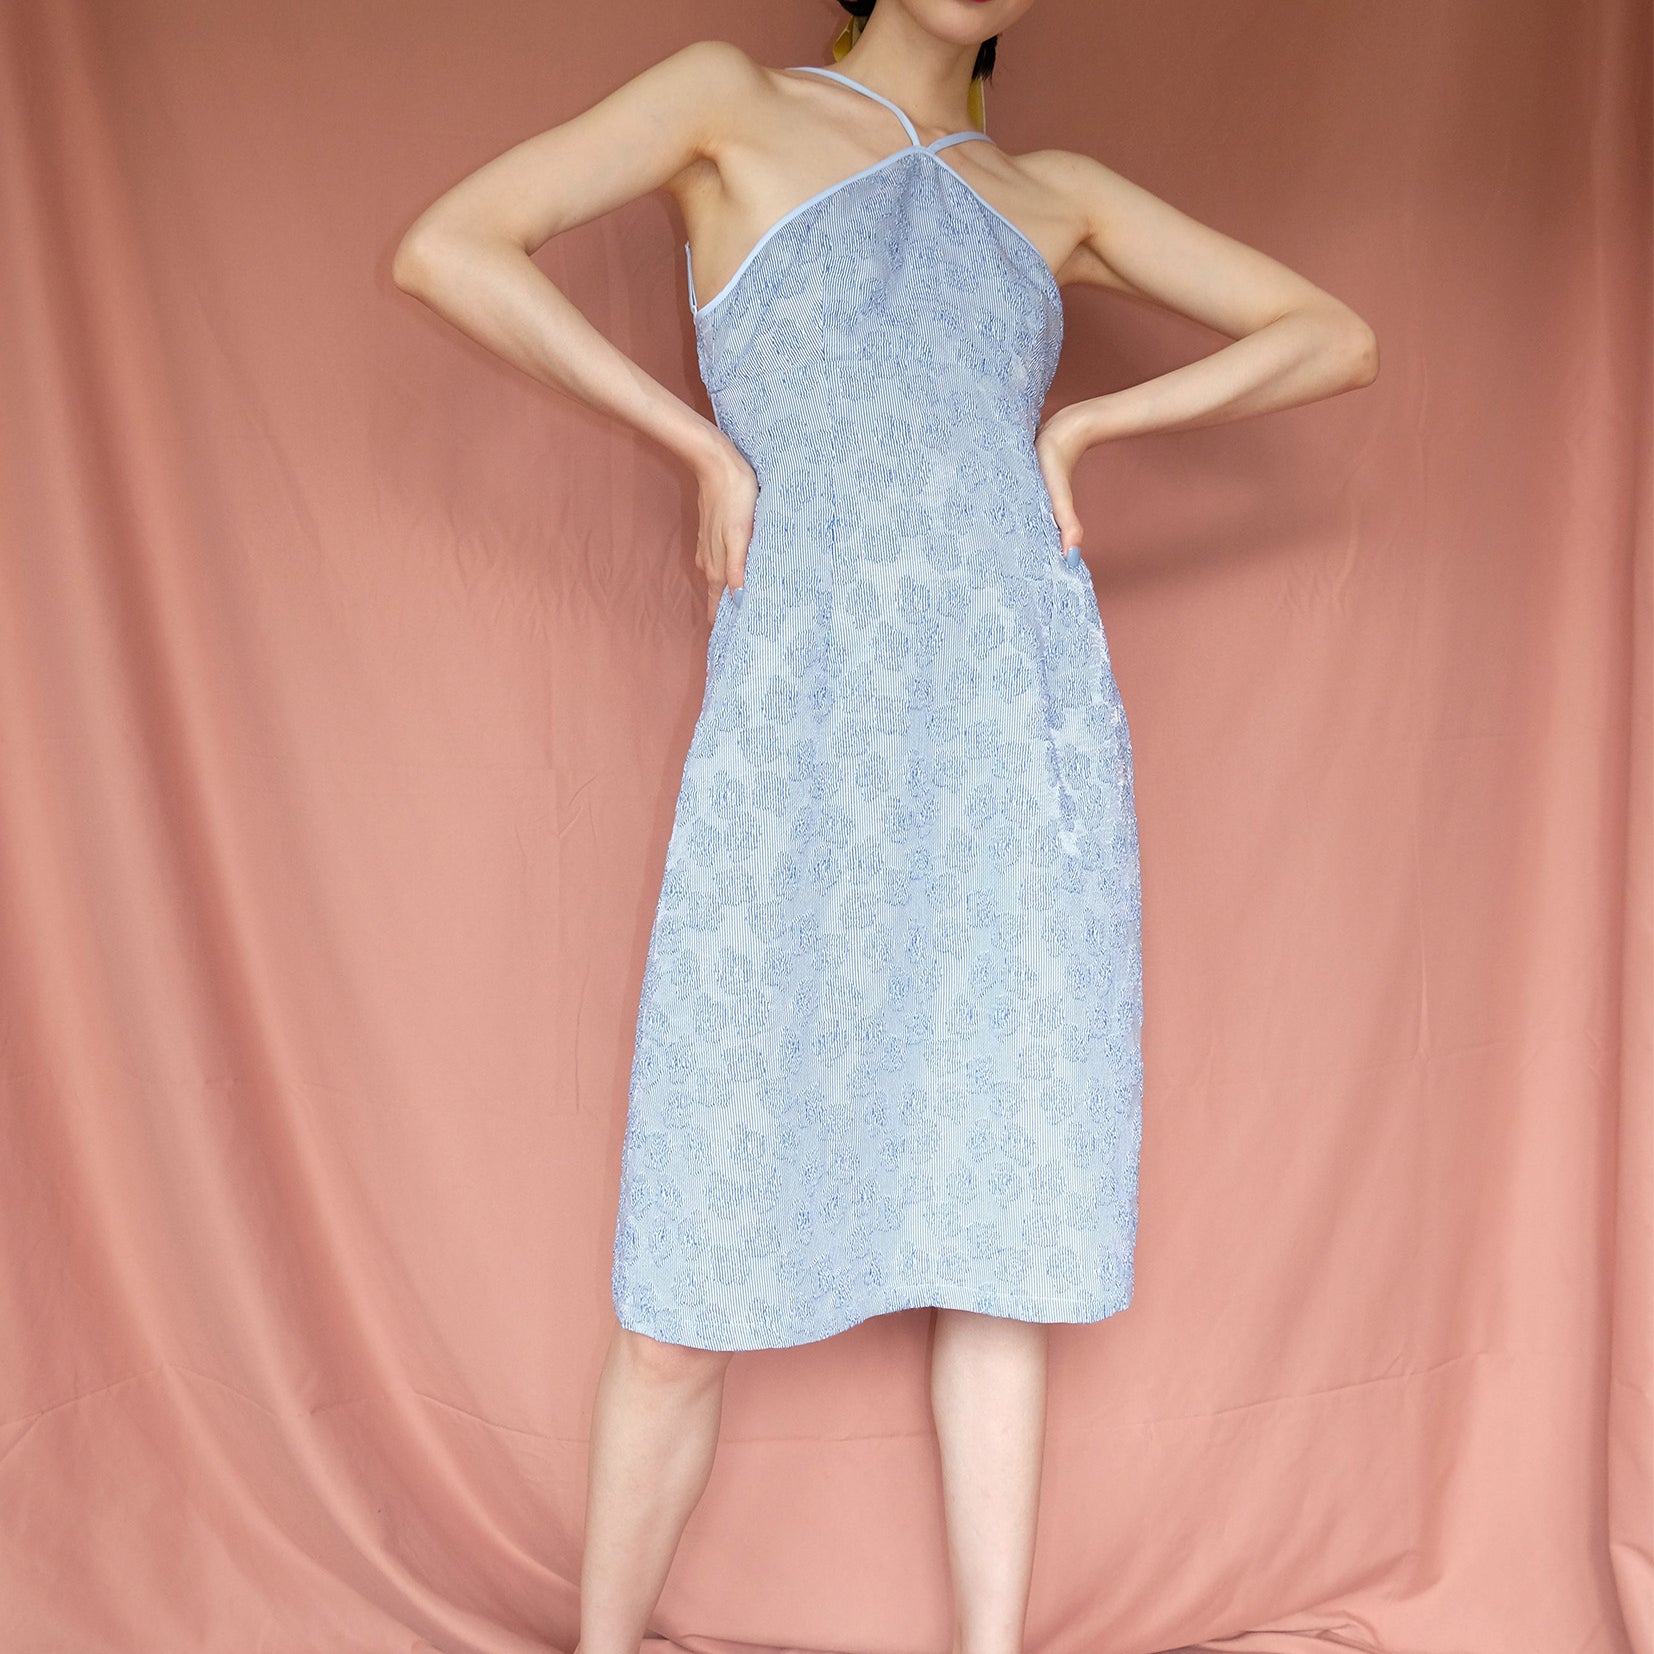 Floral textured halter dress in light blue